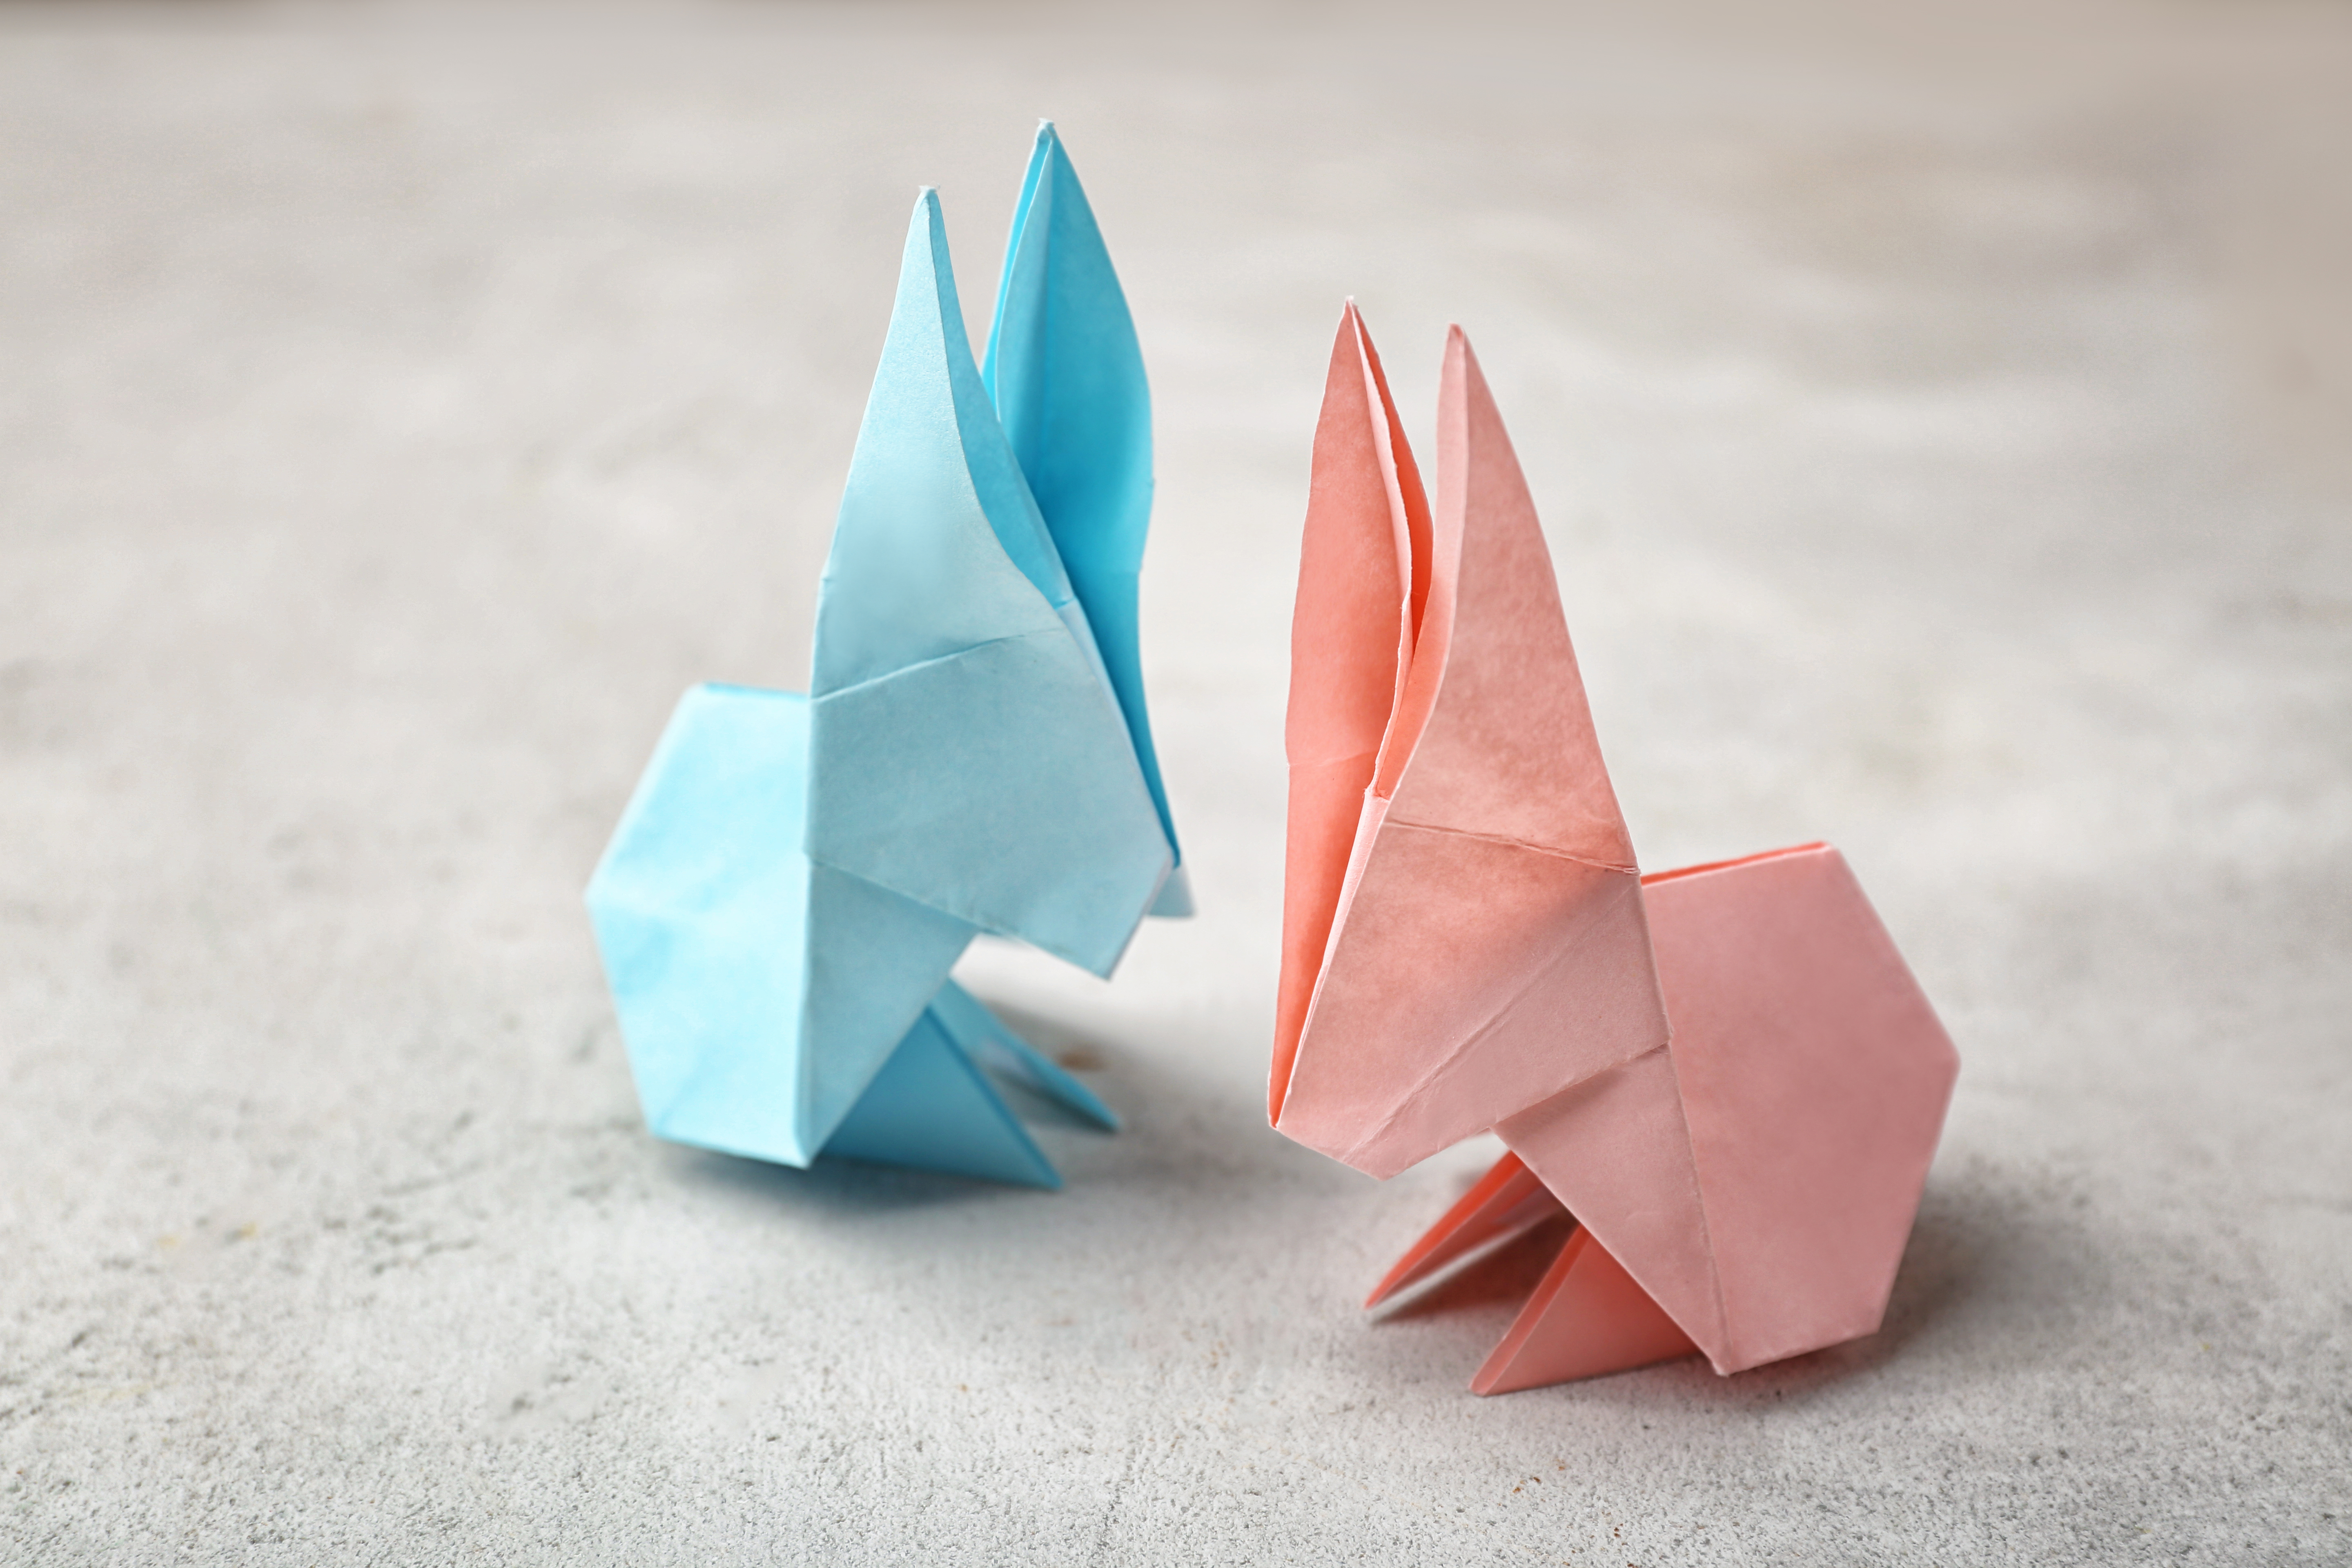 Origami paper bunnies | Source: Shutterstock